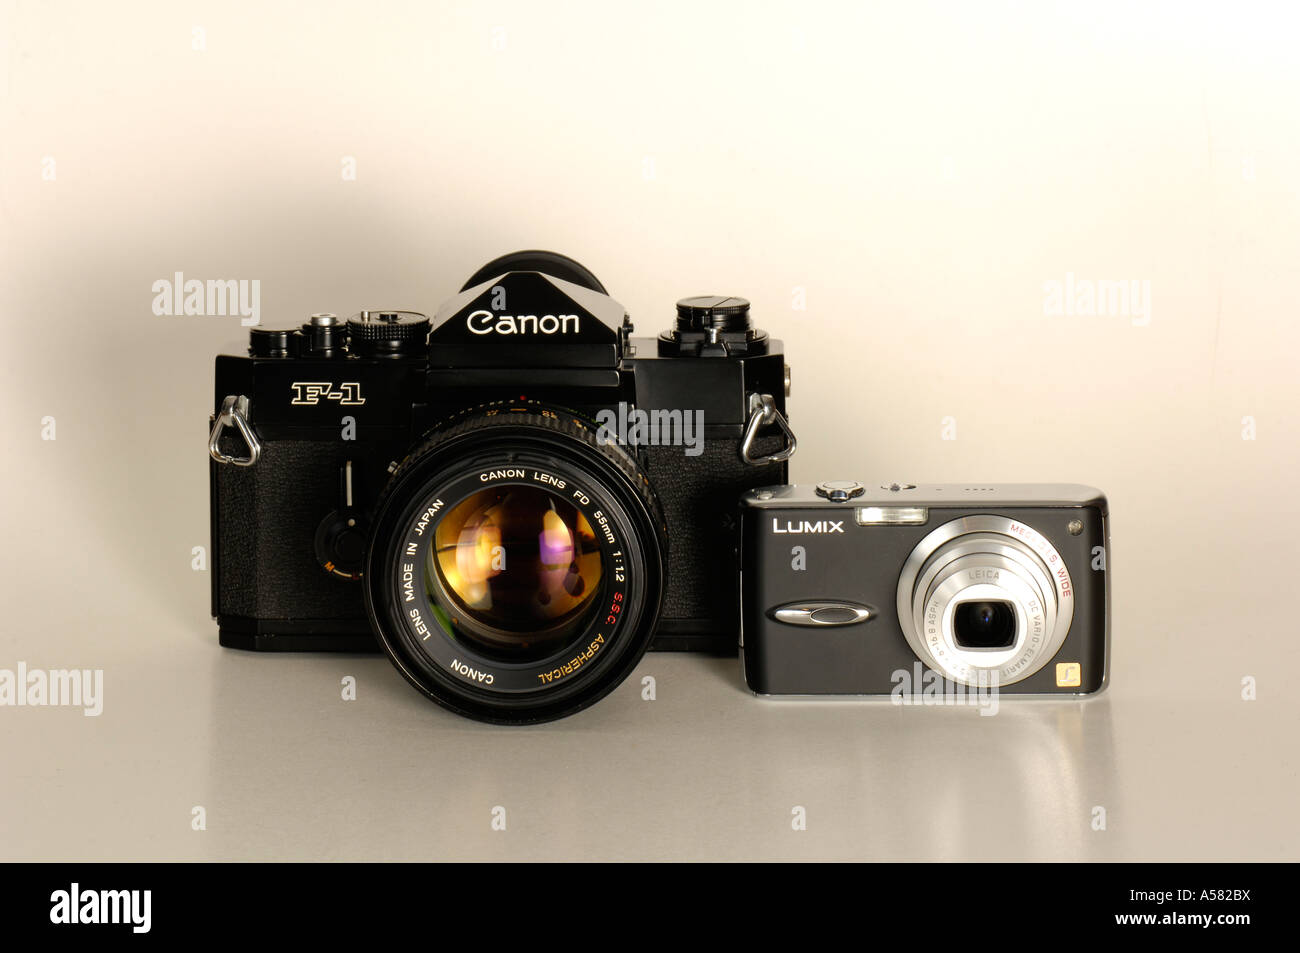 Analogico fotocamera reflex a obiettivo singolo Canon F-1 degli anni  settanta e attuale fotocamera digitale parte anteriore Foto stock - Alamy